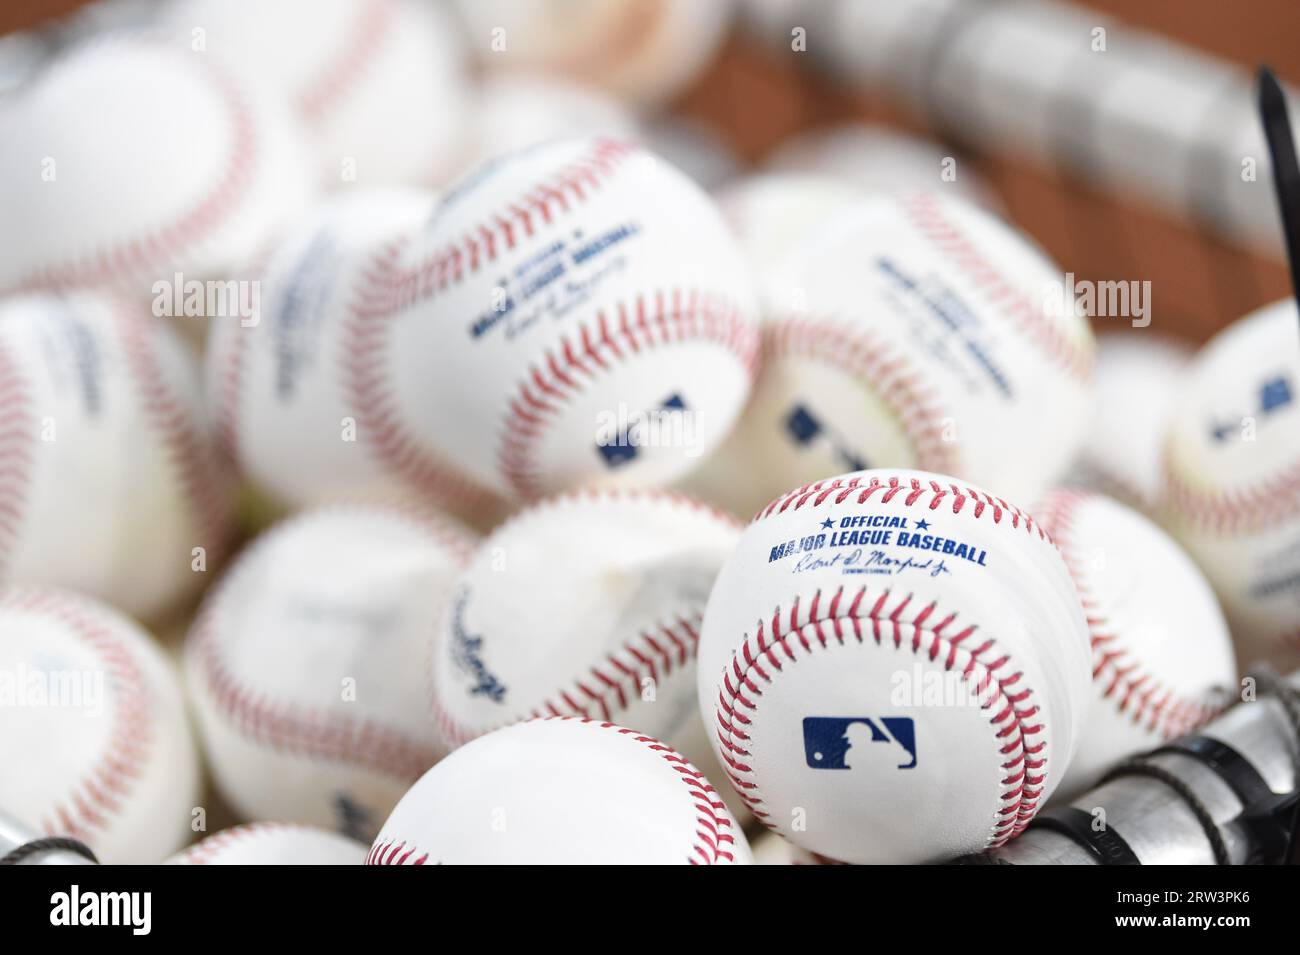 Major League Baseball pronti per le prove sul campo prima della partita della MLB tra gli Oakland Athletics e gli Houston Astros mercoledì 13 settembre, Foto Stock